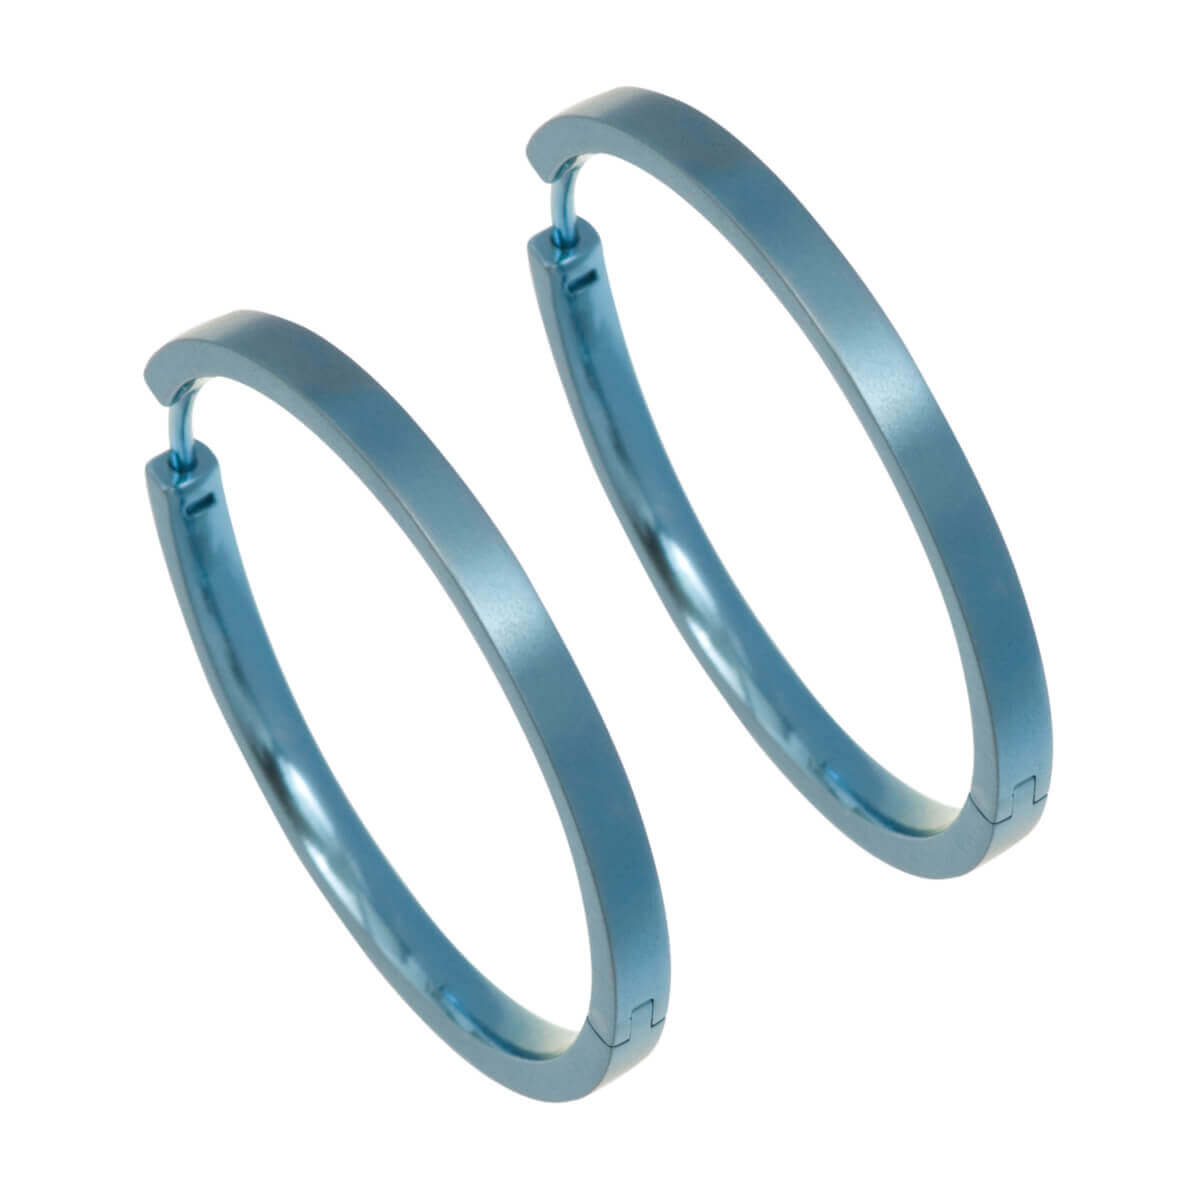 Titanium Large Hinged Hoop Earrings - Blue/Green Tones